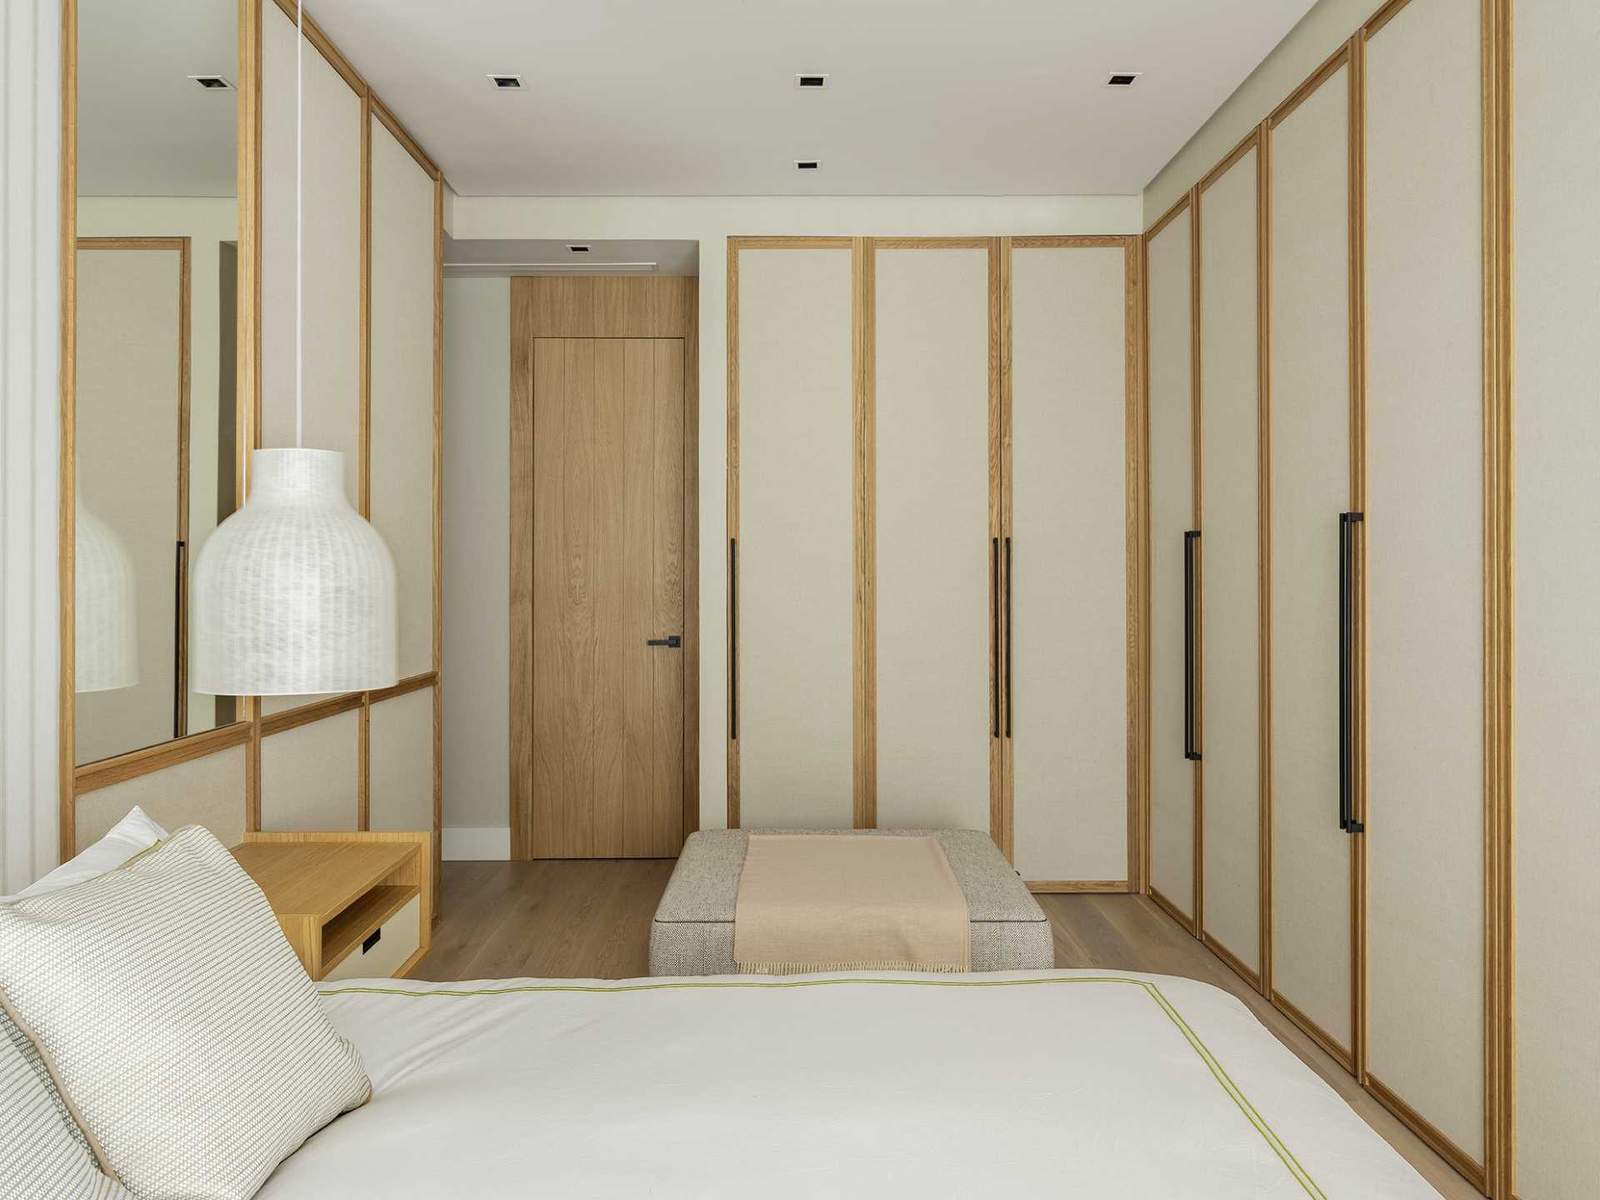 تزين الألواح القماشية والمرايا جدار غرفة النوم هذه، بينما تحتوي الطاولات الجانبية للسرير العائمة على أضواء معلقة معلقة فوقها.